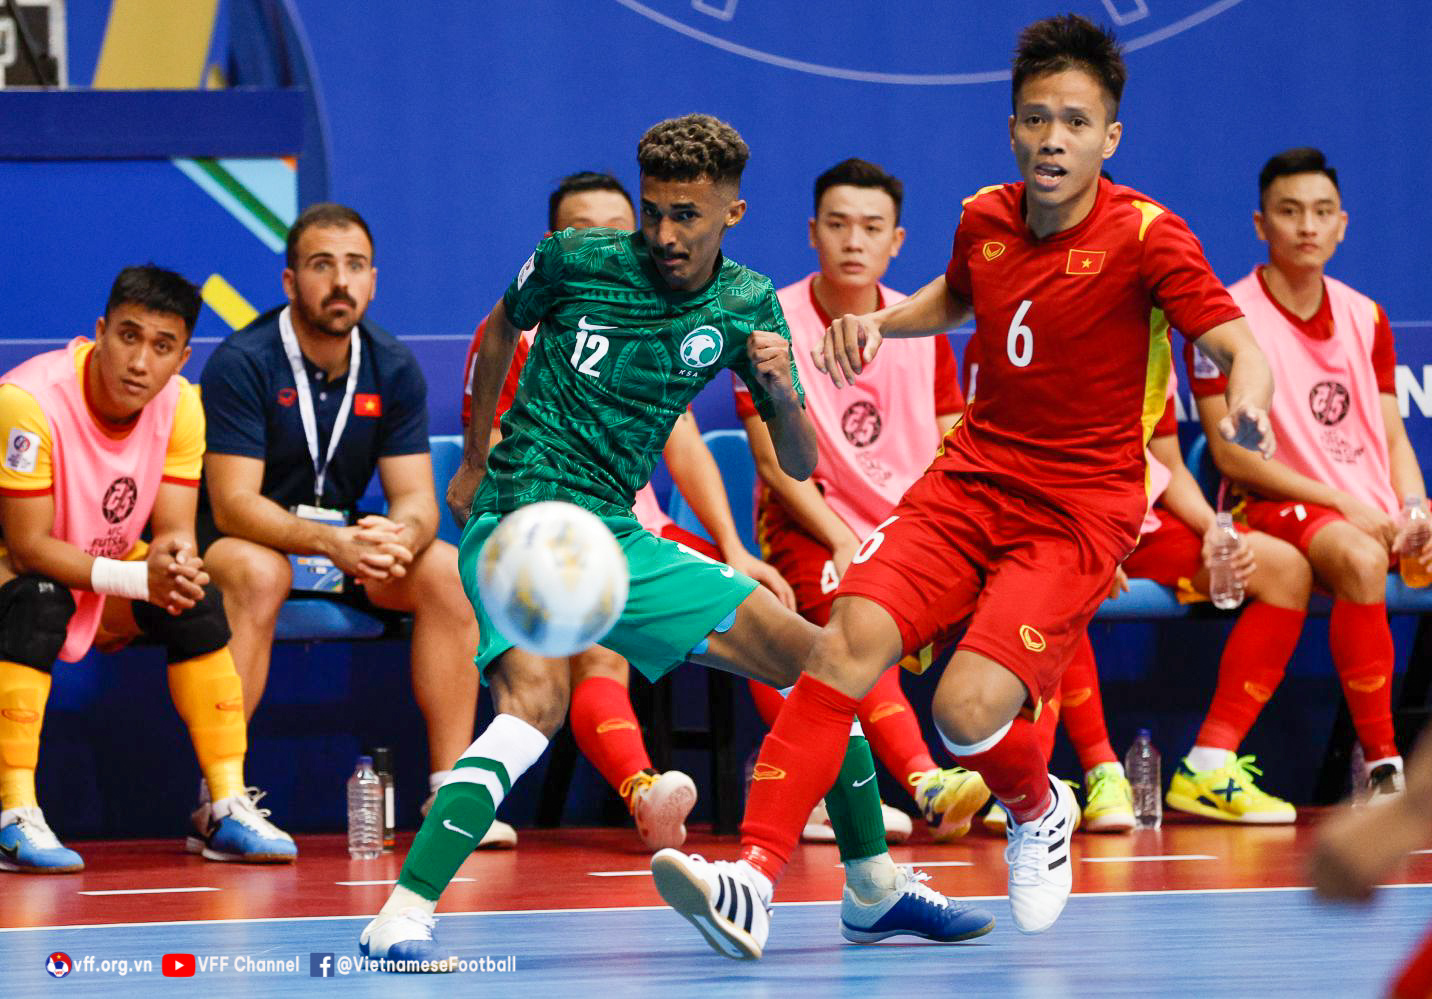 VFF - Thắng Saudi Arabia 3-1, ĐT futsal Việt Nam vươn lên đầu bảng